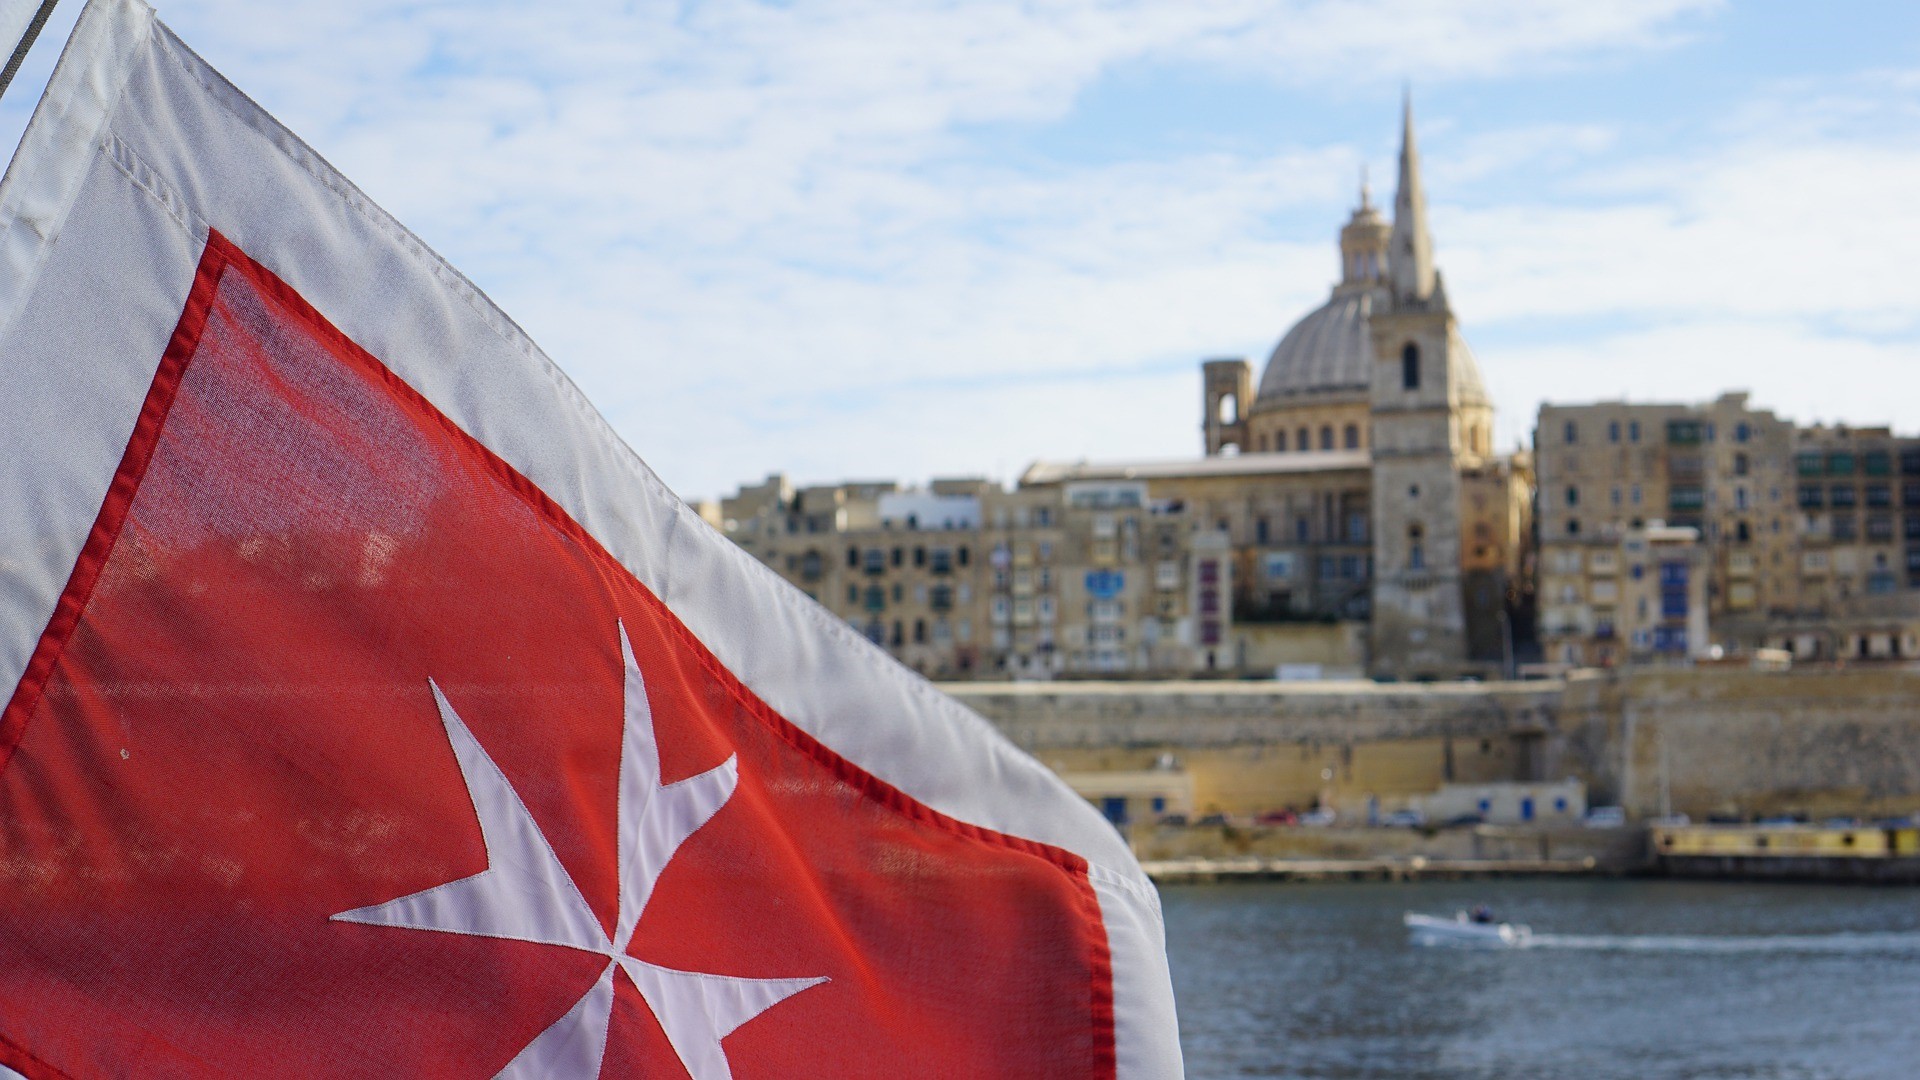 Bandeira em forma de cruz de Malta, com Valletta ao fundo.